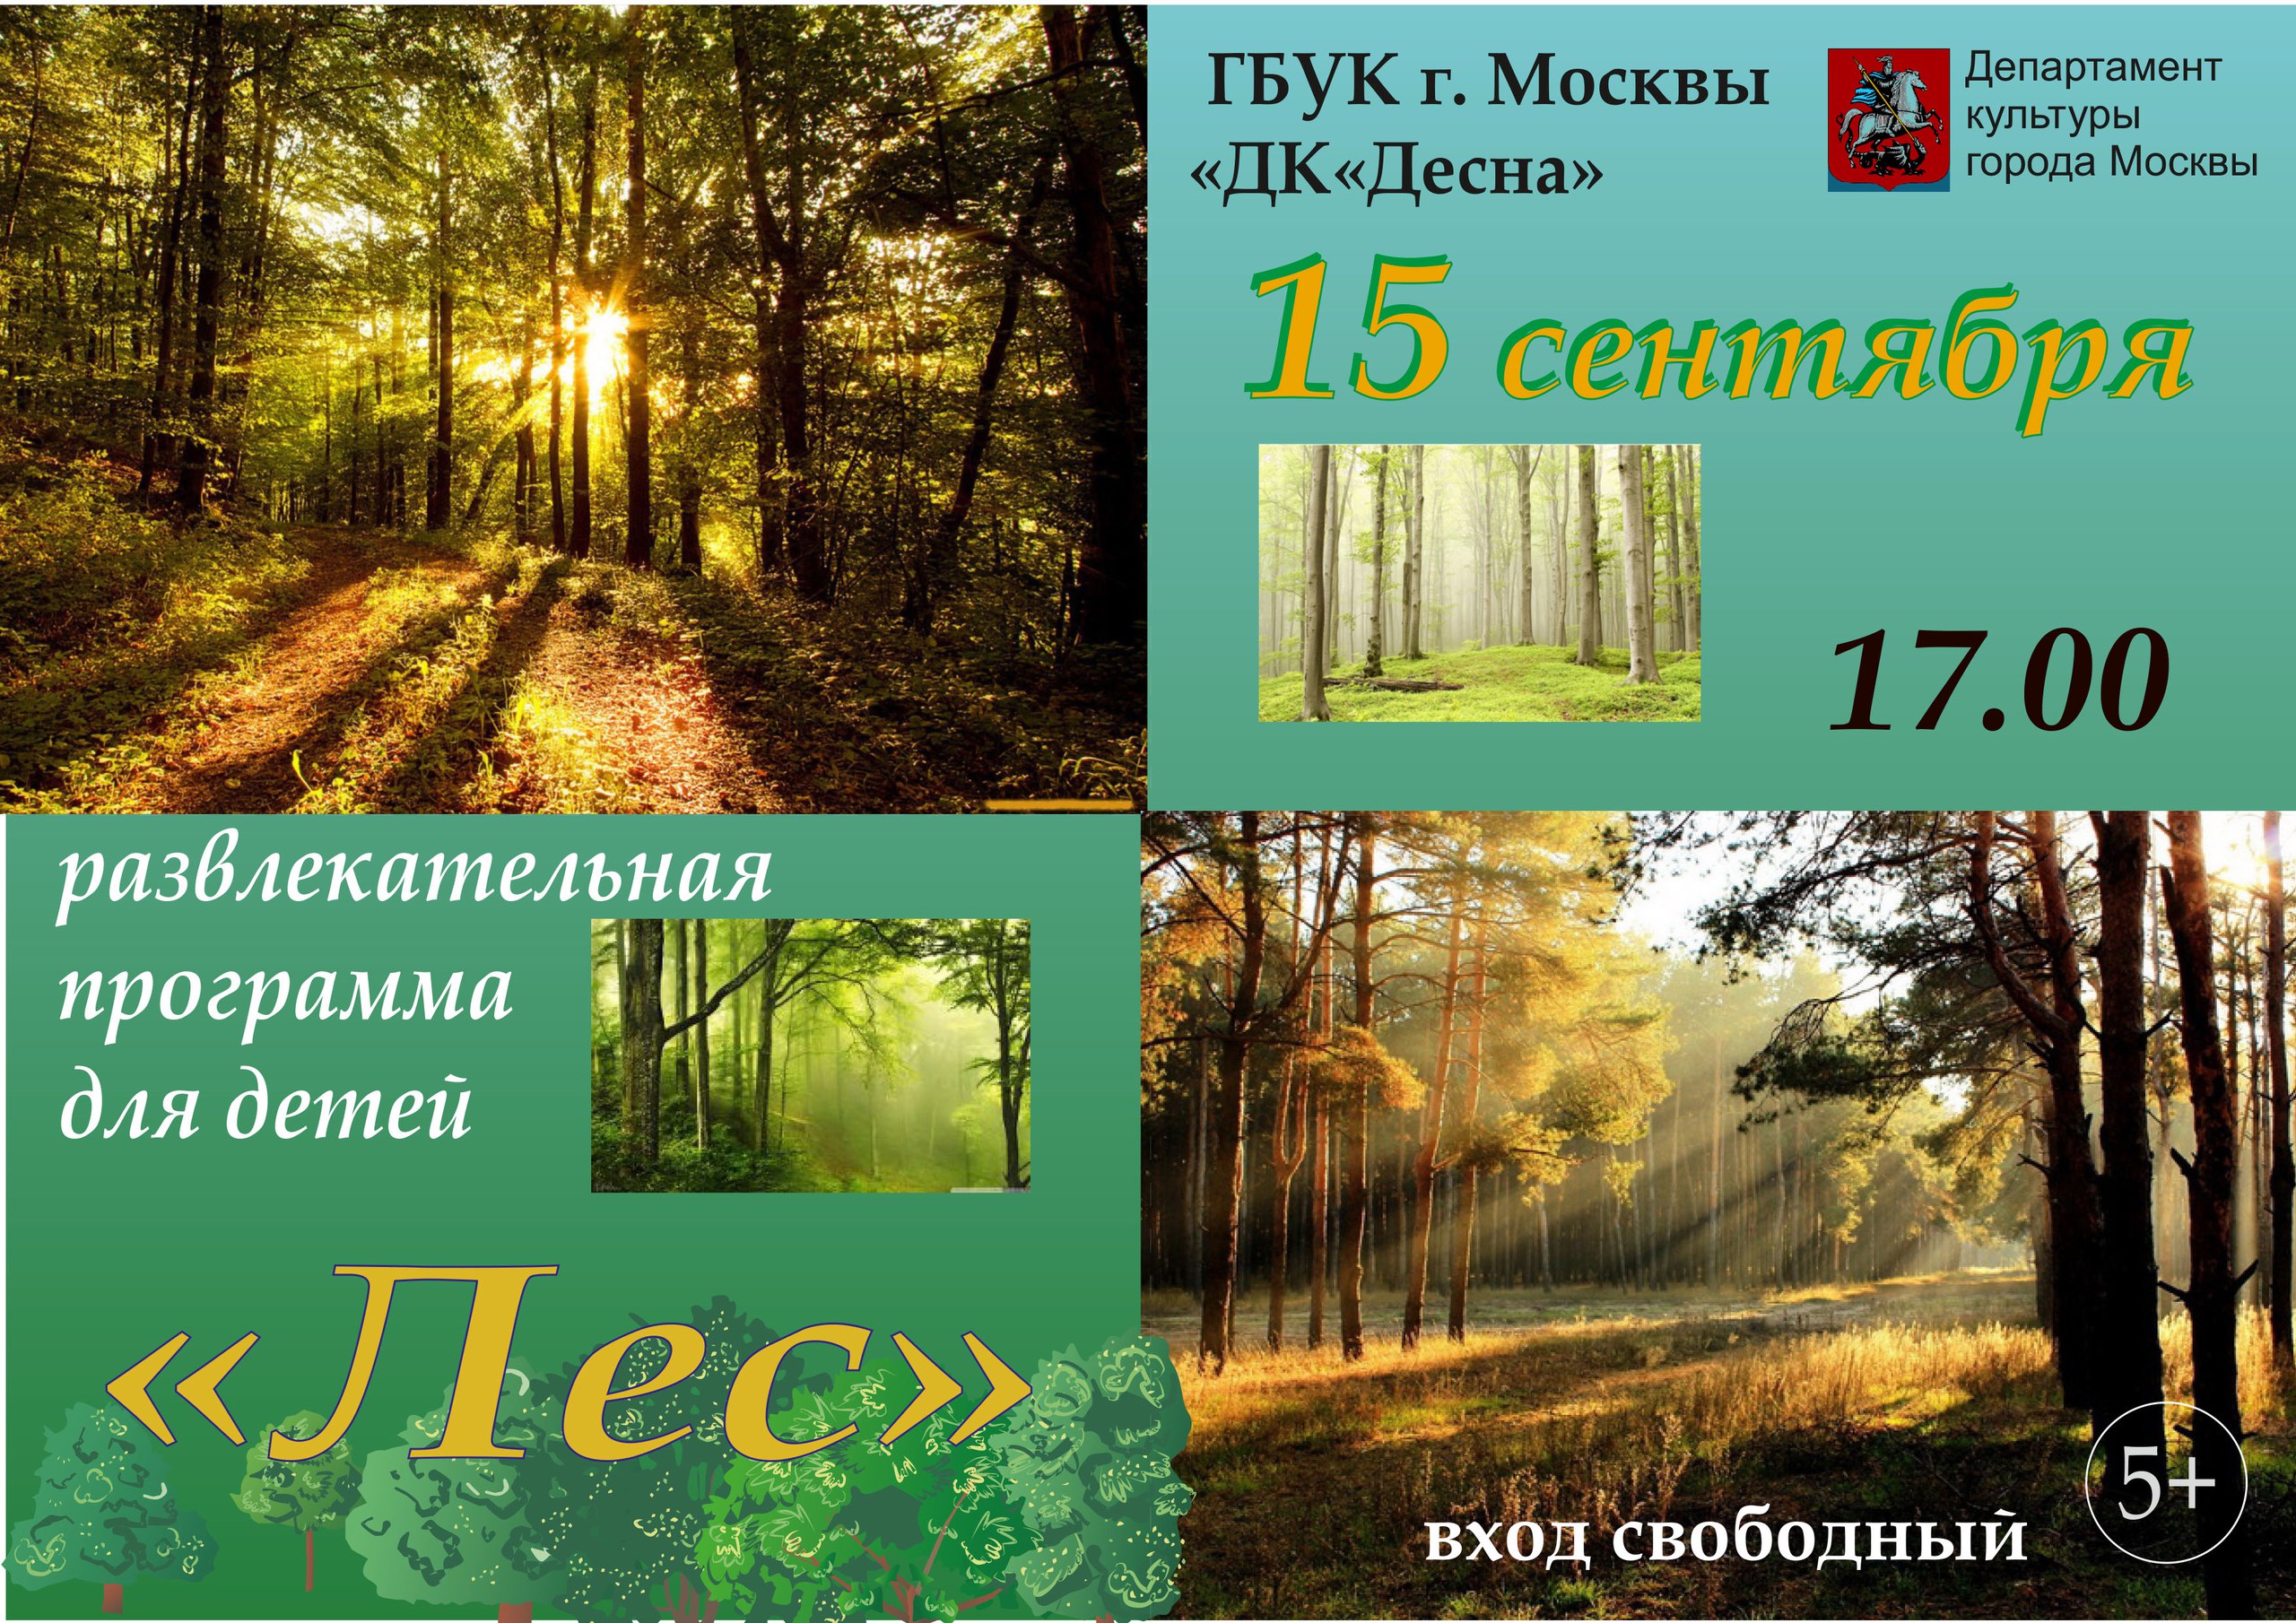 15 сентября в 17.00 в ГБУК г.Москвы "ДК "Десна" состоится развлекательная программа "Лес", приуроченная ко Дню работника леса.  В ходе мероприятия, дети будут играть и выполнять веселые задания, при этом узнавать что-то новое для себя